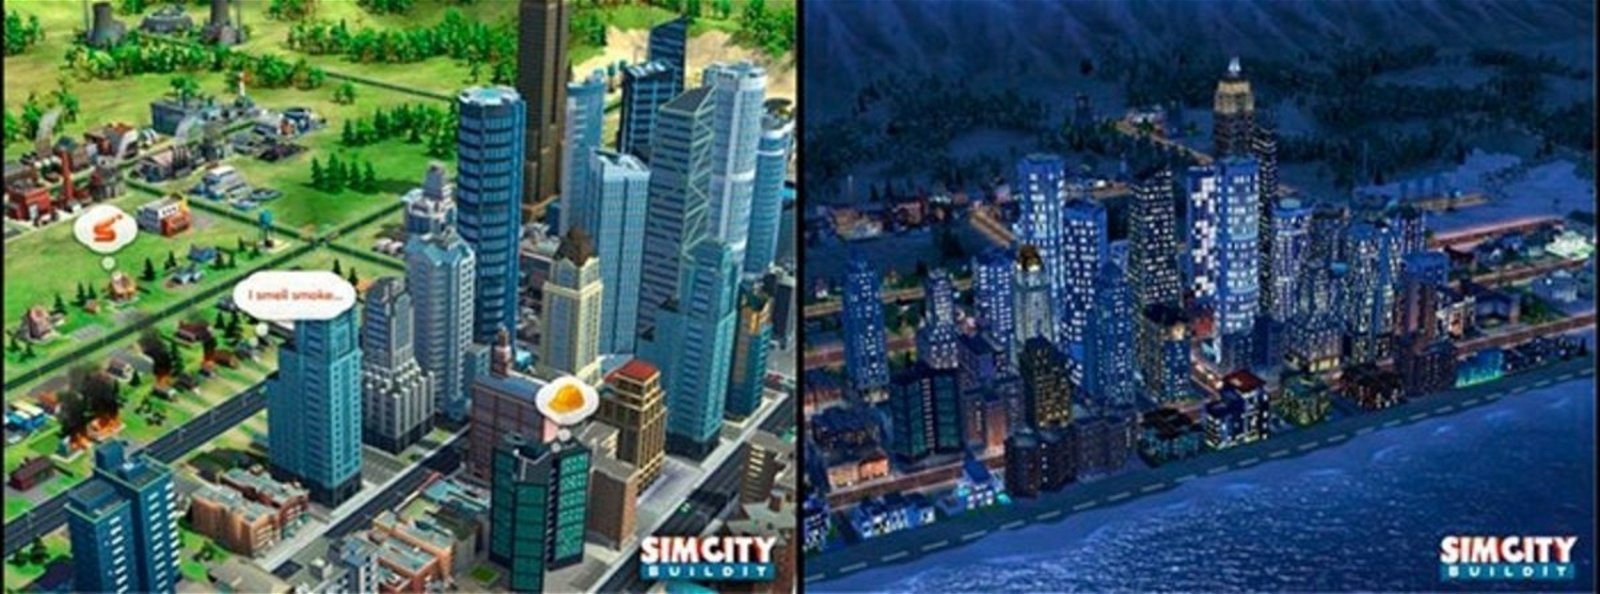 SimCity BuildIt capturas